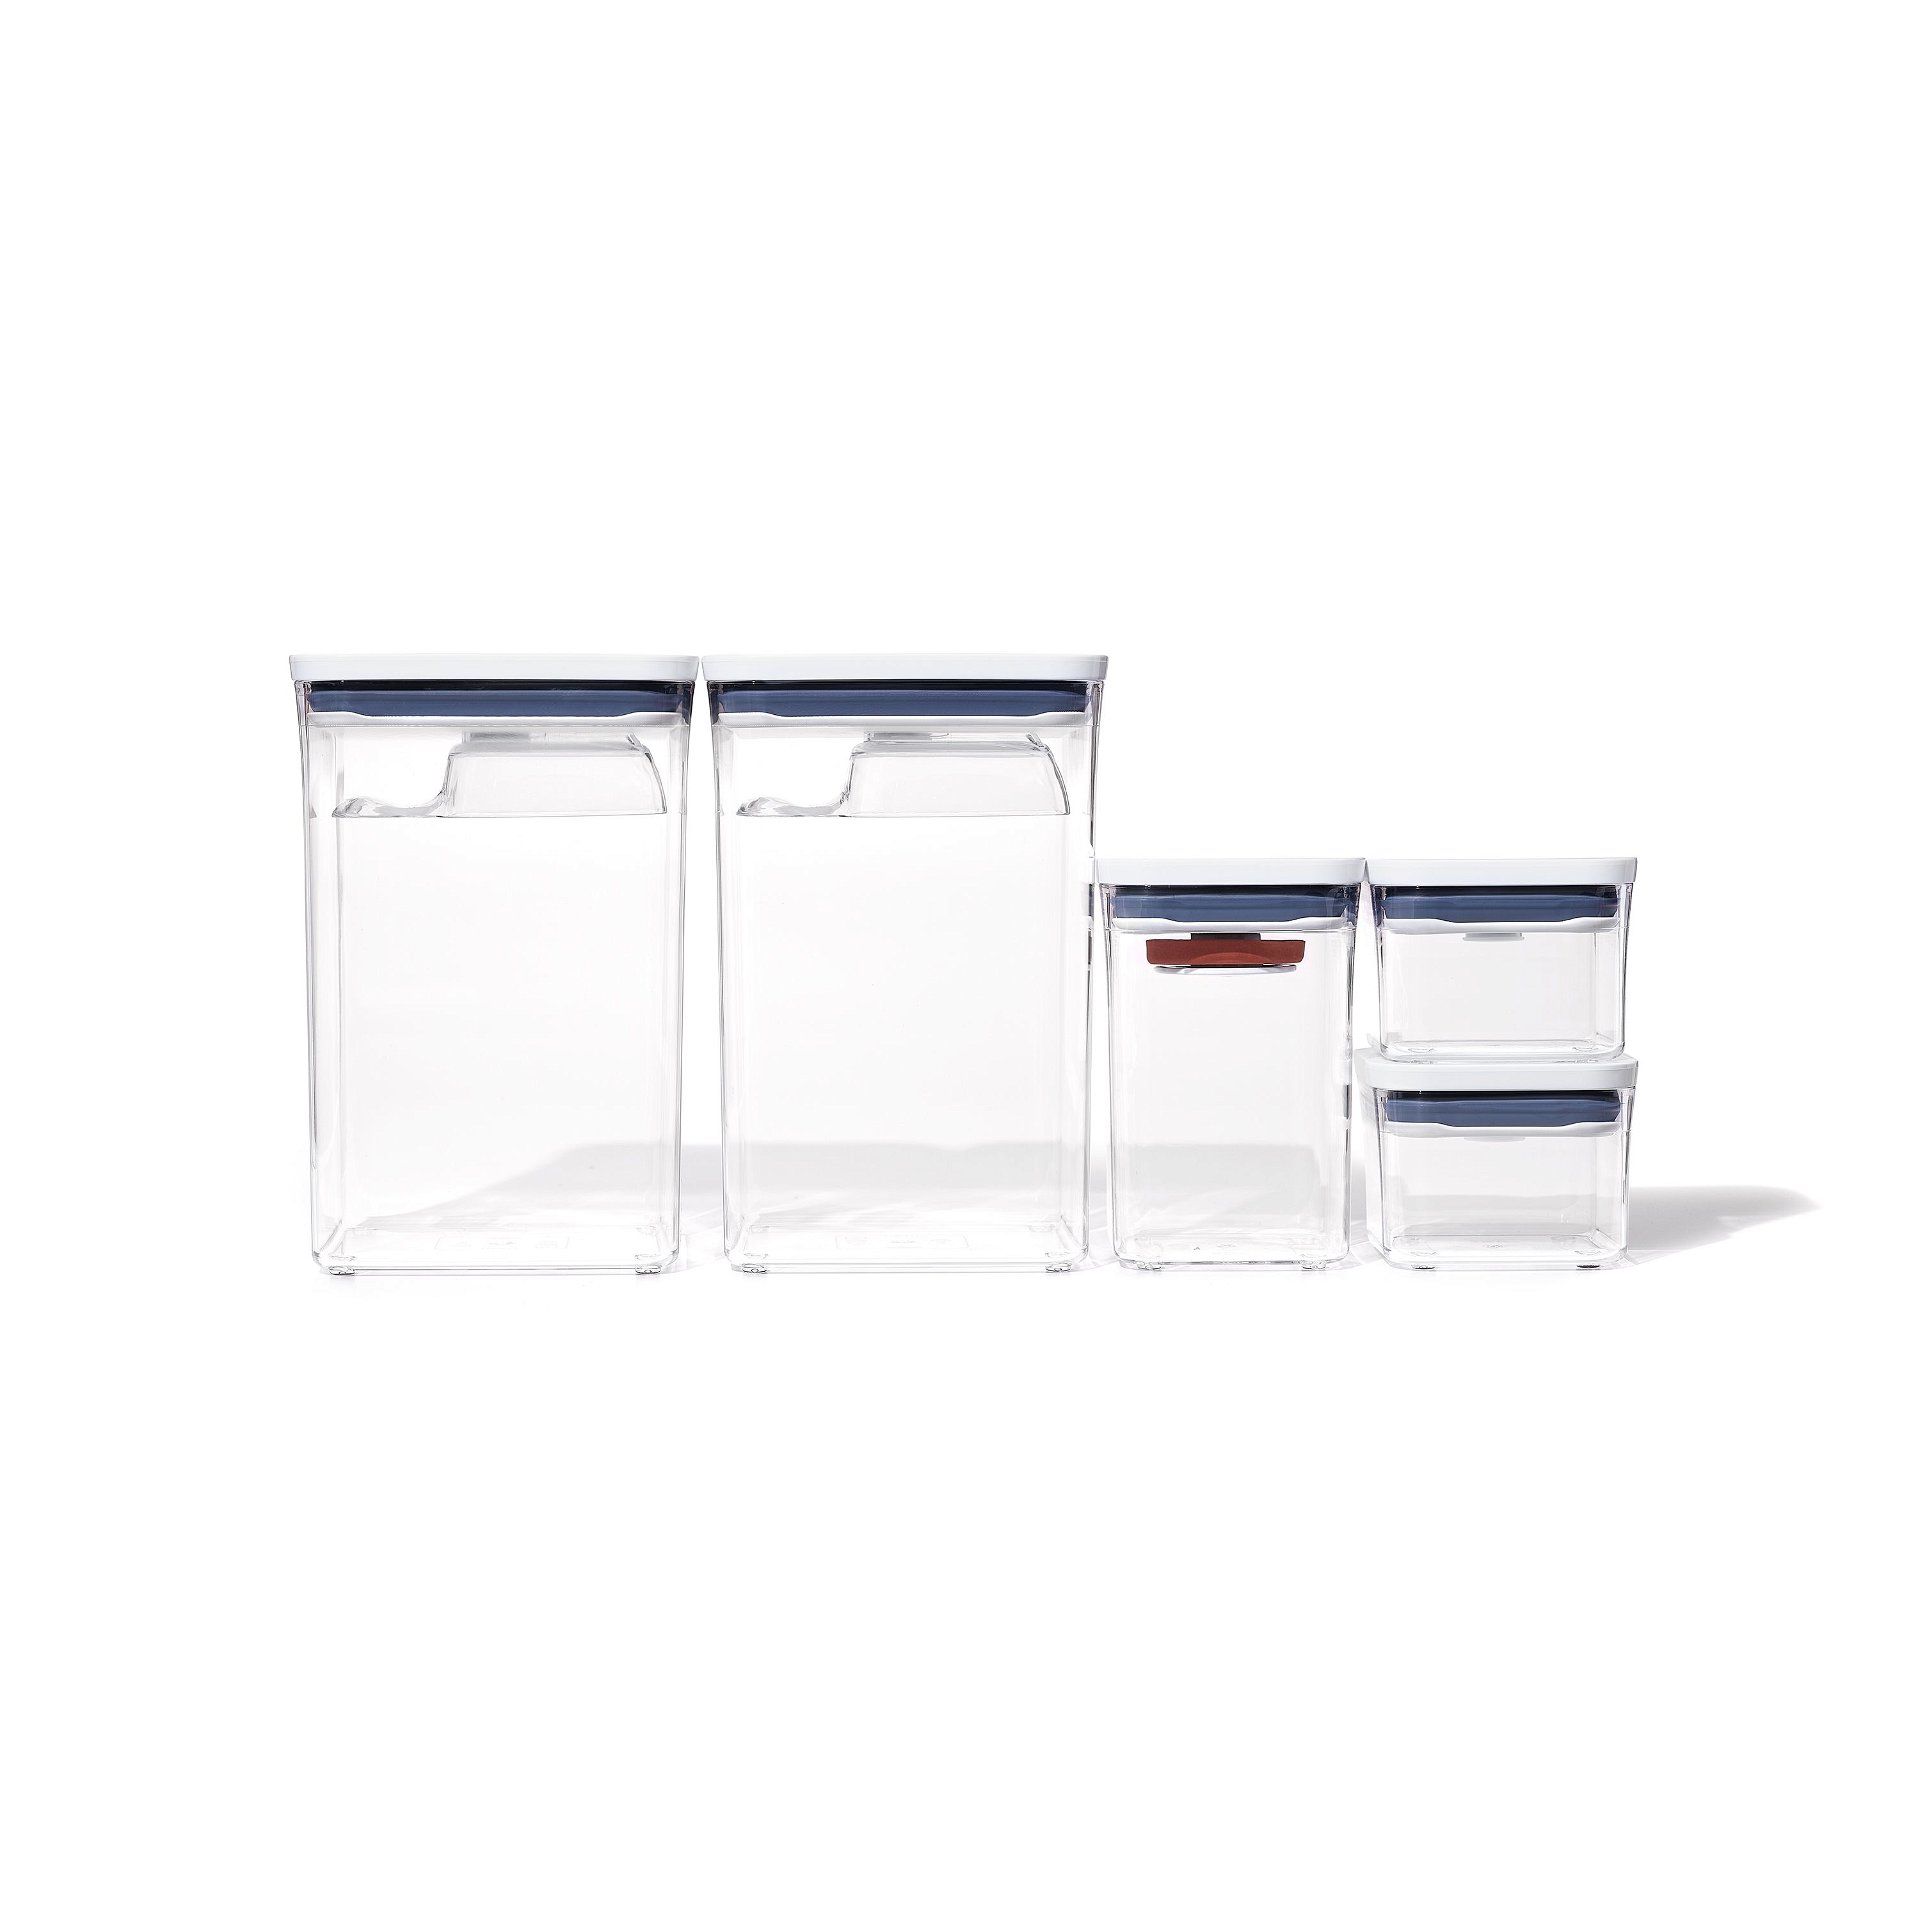 8-Piece Pop Container Baking Set & 3-Piece Pop Container Value Set Bundle